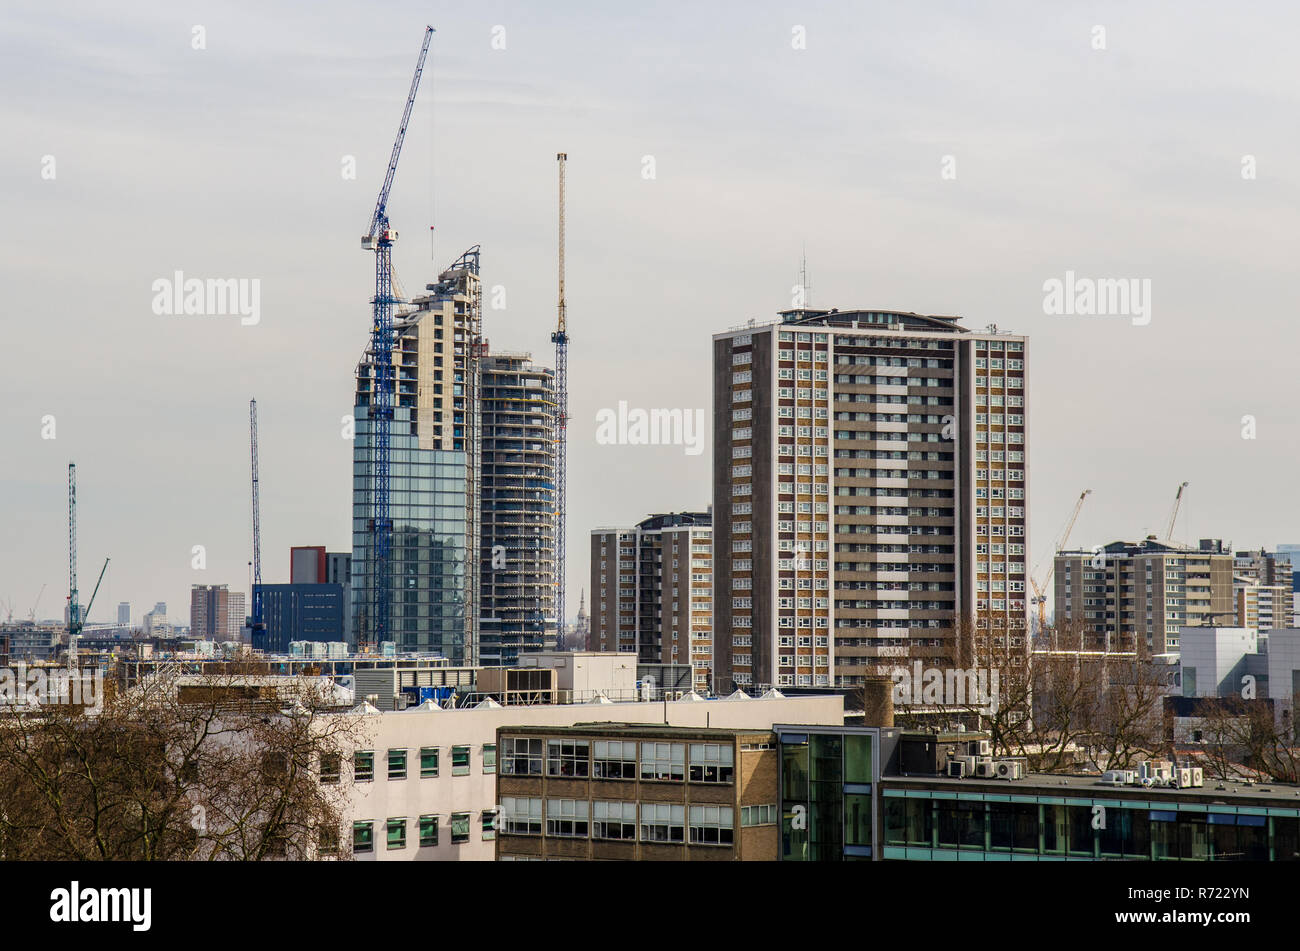 London, England, UK - 13. März 2015: Turmdrehkrane stand über die Baustellen der Wolkenkratzer, Teil eines Clusters neuer - hoch bauen - Aufstieg apartmen Stockfoto